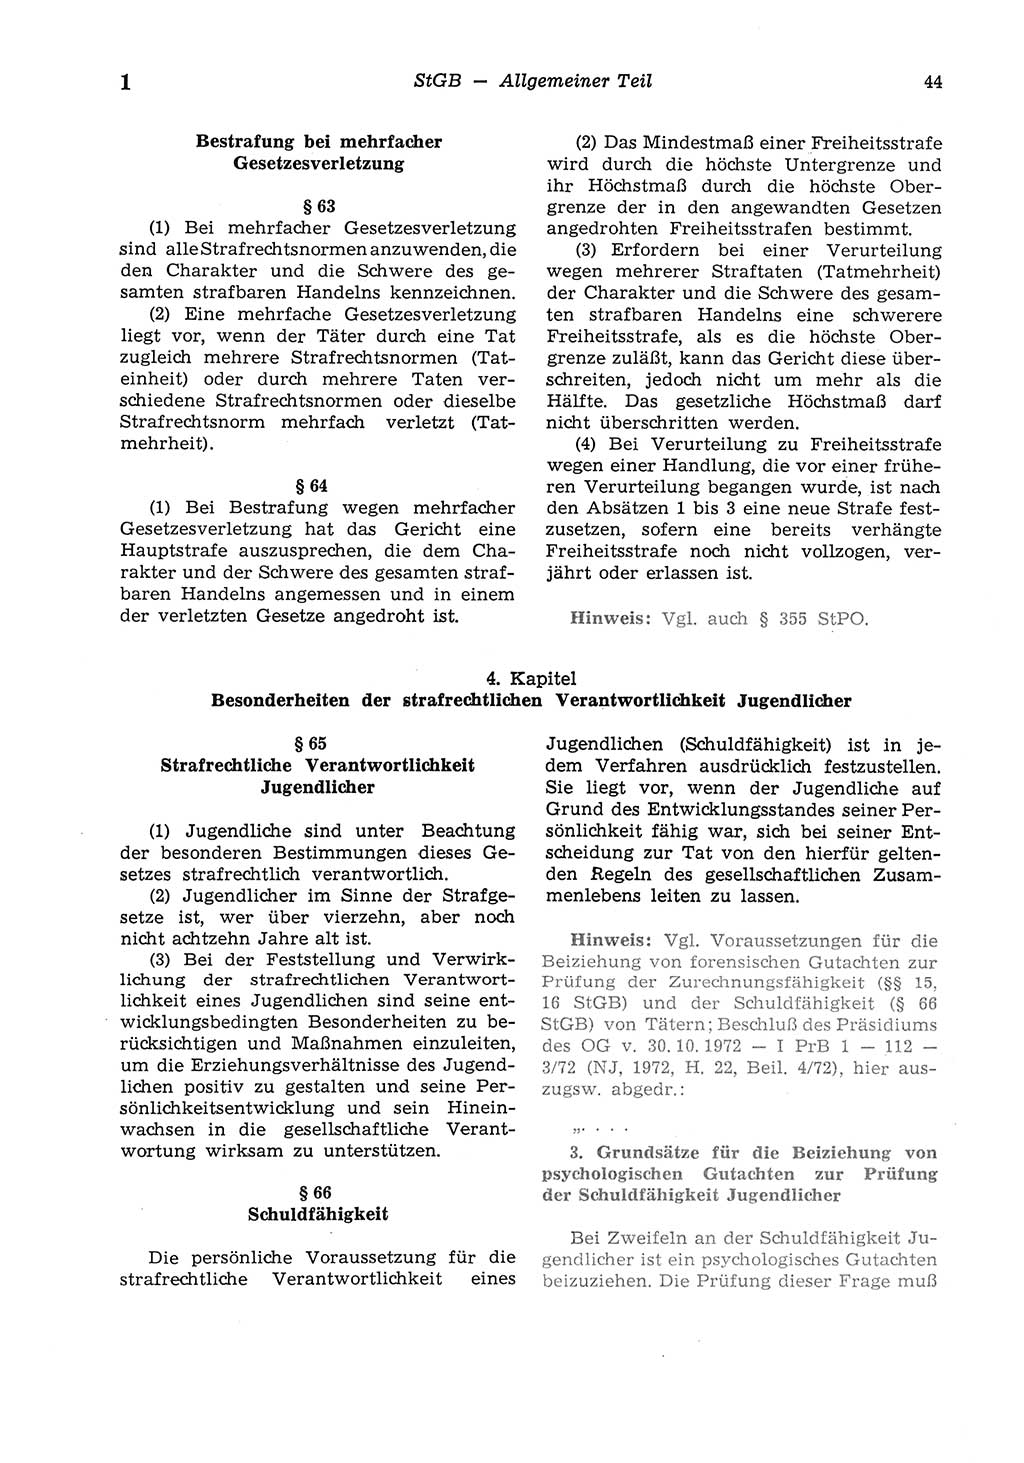 Strafgesetzbuch (StGB) der Deutschen Demokratischen Republik (DDR) und angrenzende Gesetze und Bestimmungen 1975, Seite 44 (StGB DDR Ges. Best. 1975, S. 44)